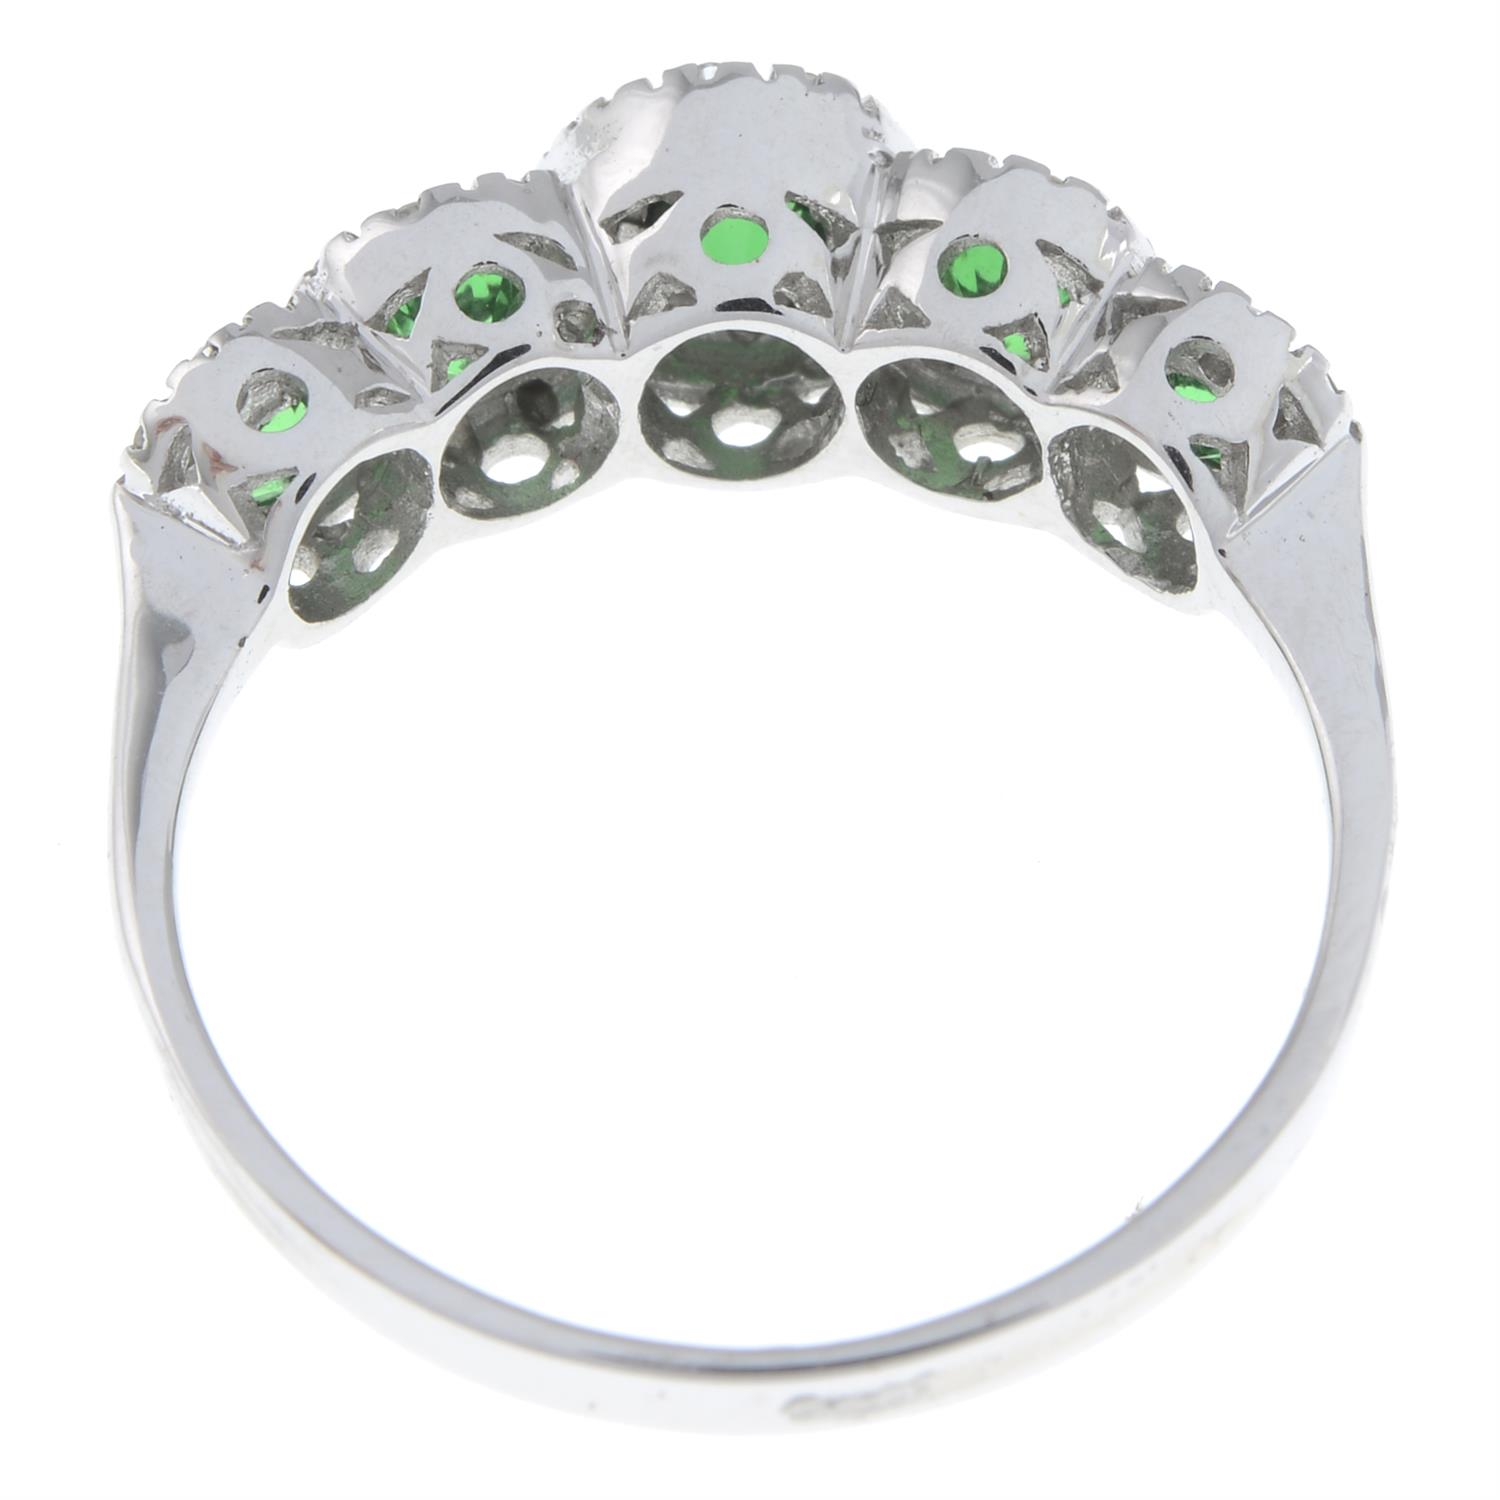 Tsavorite garnet and diamond ring - Image 3 of 5